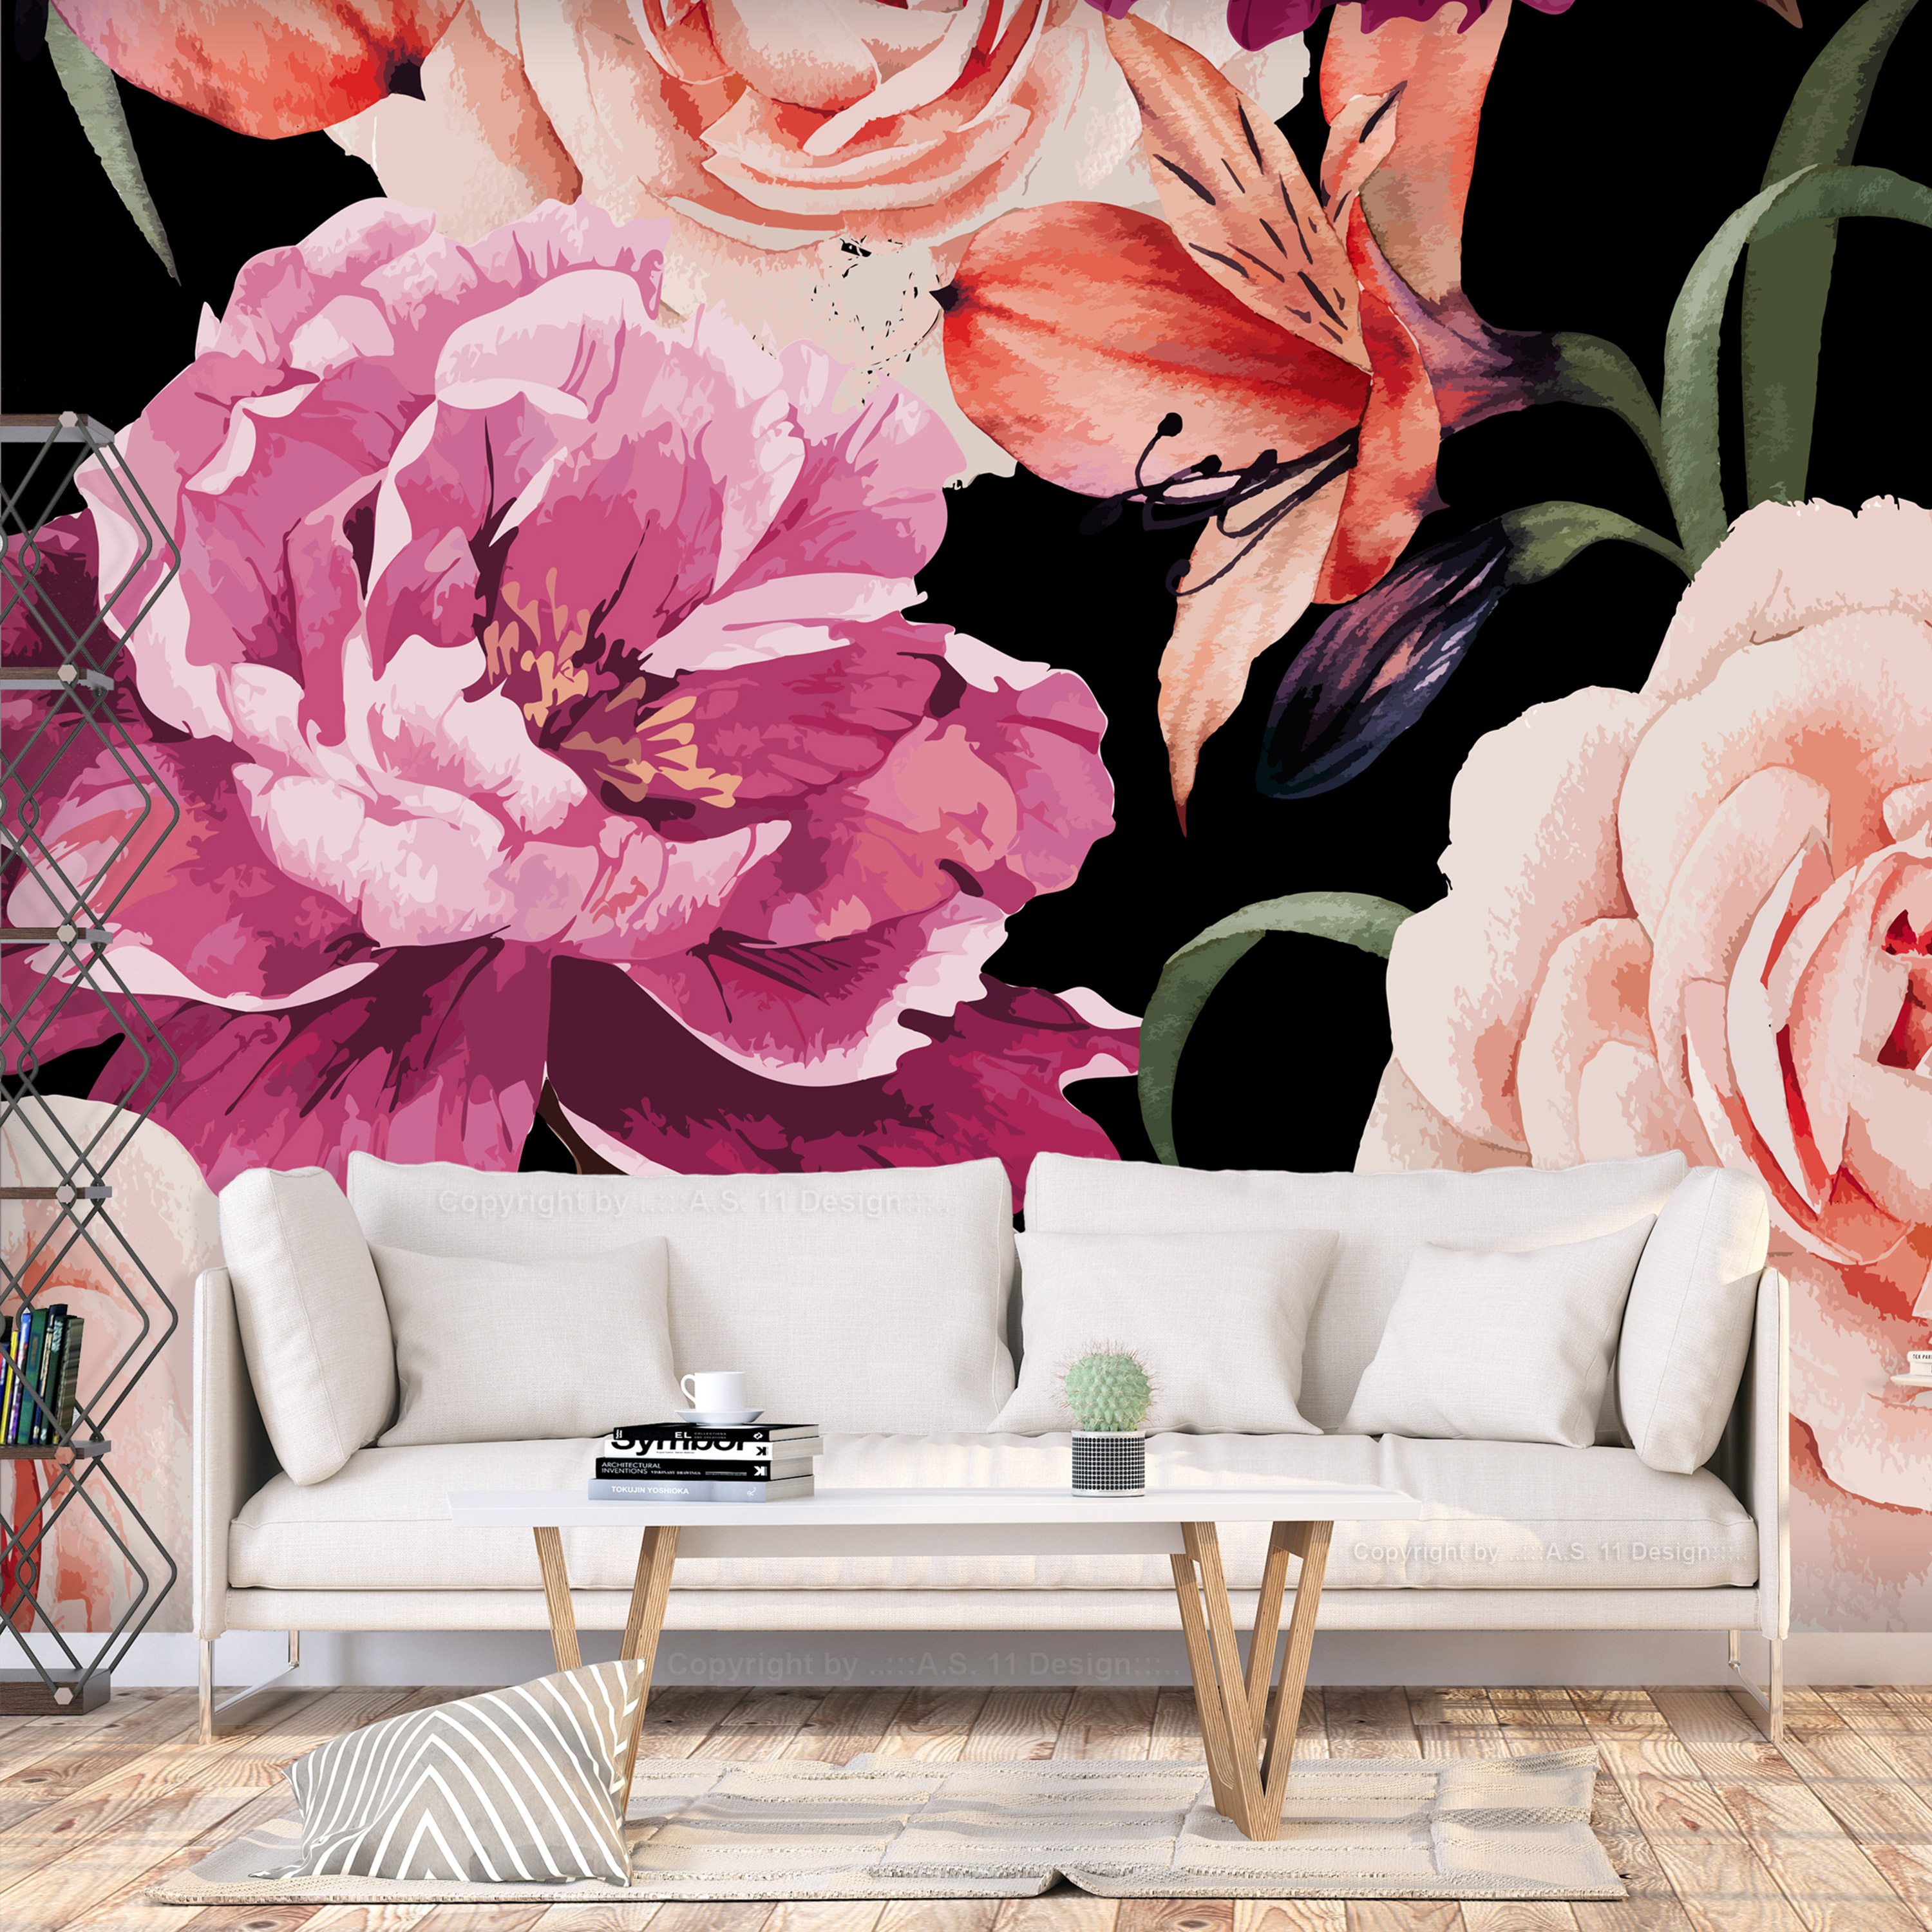 Self-adhesive Wallpaper - Roses of Love - 245x175